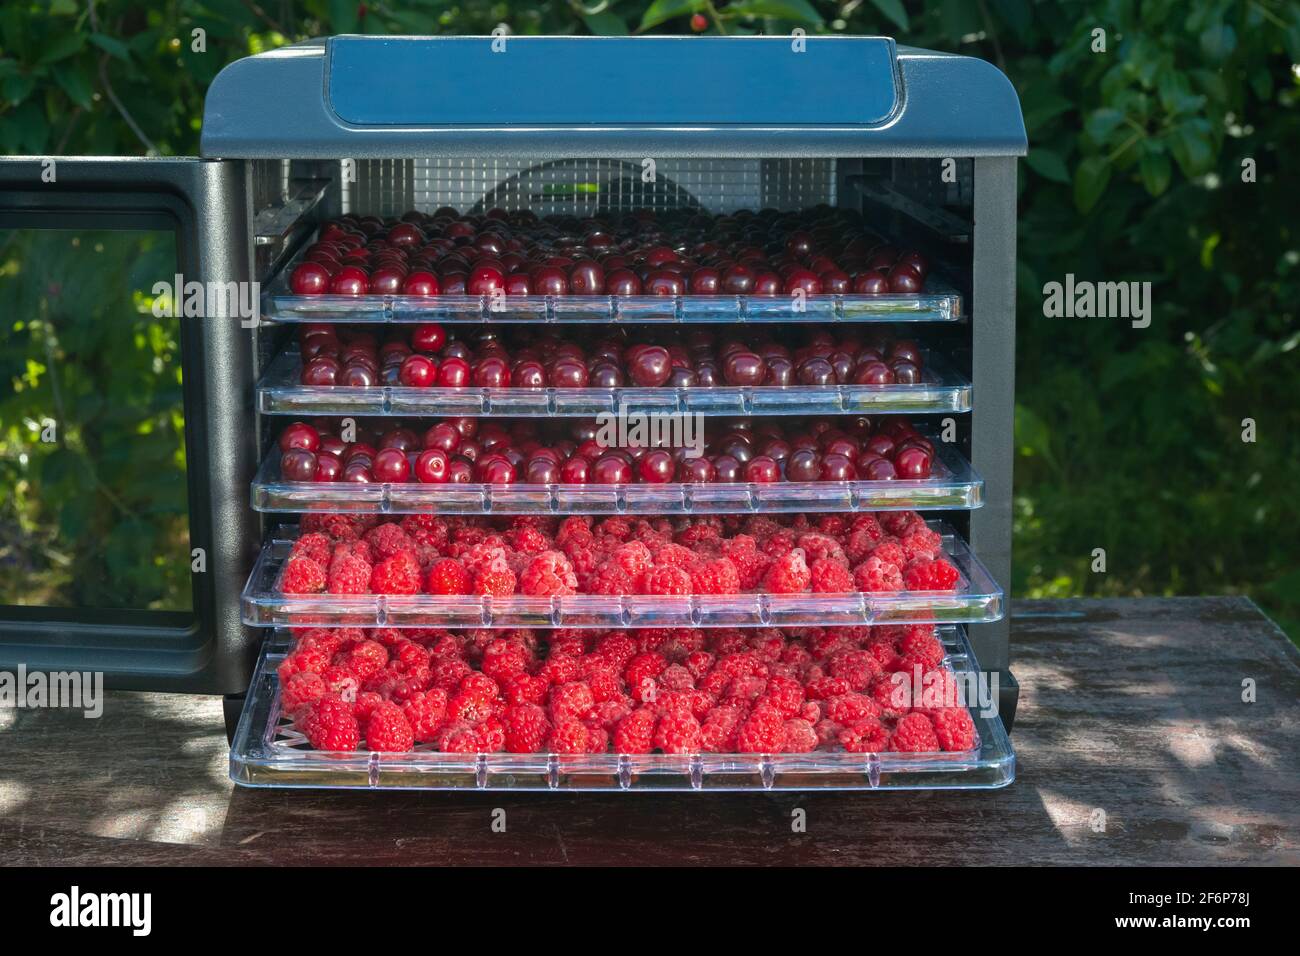 Frische Kirschen und Himbeeren bereit für die Dehydrierung in einer elektrischen Trocknungsmaschine für die Heimtrocknung von Früchten und Beeren. Stockfoto